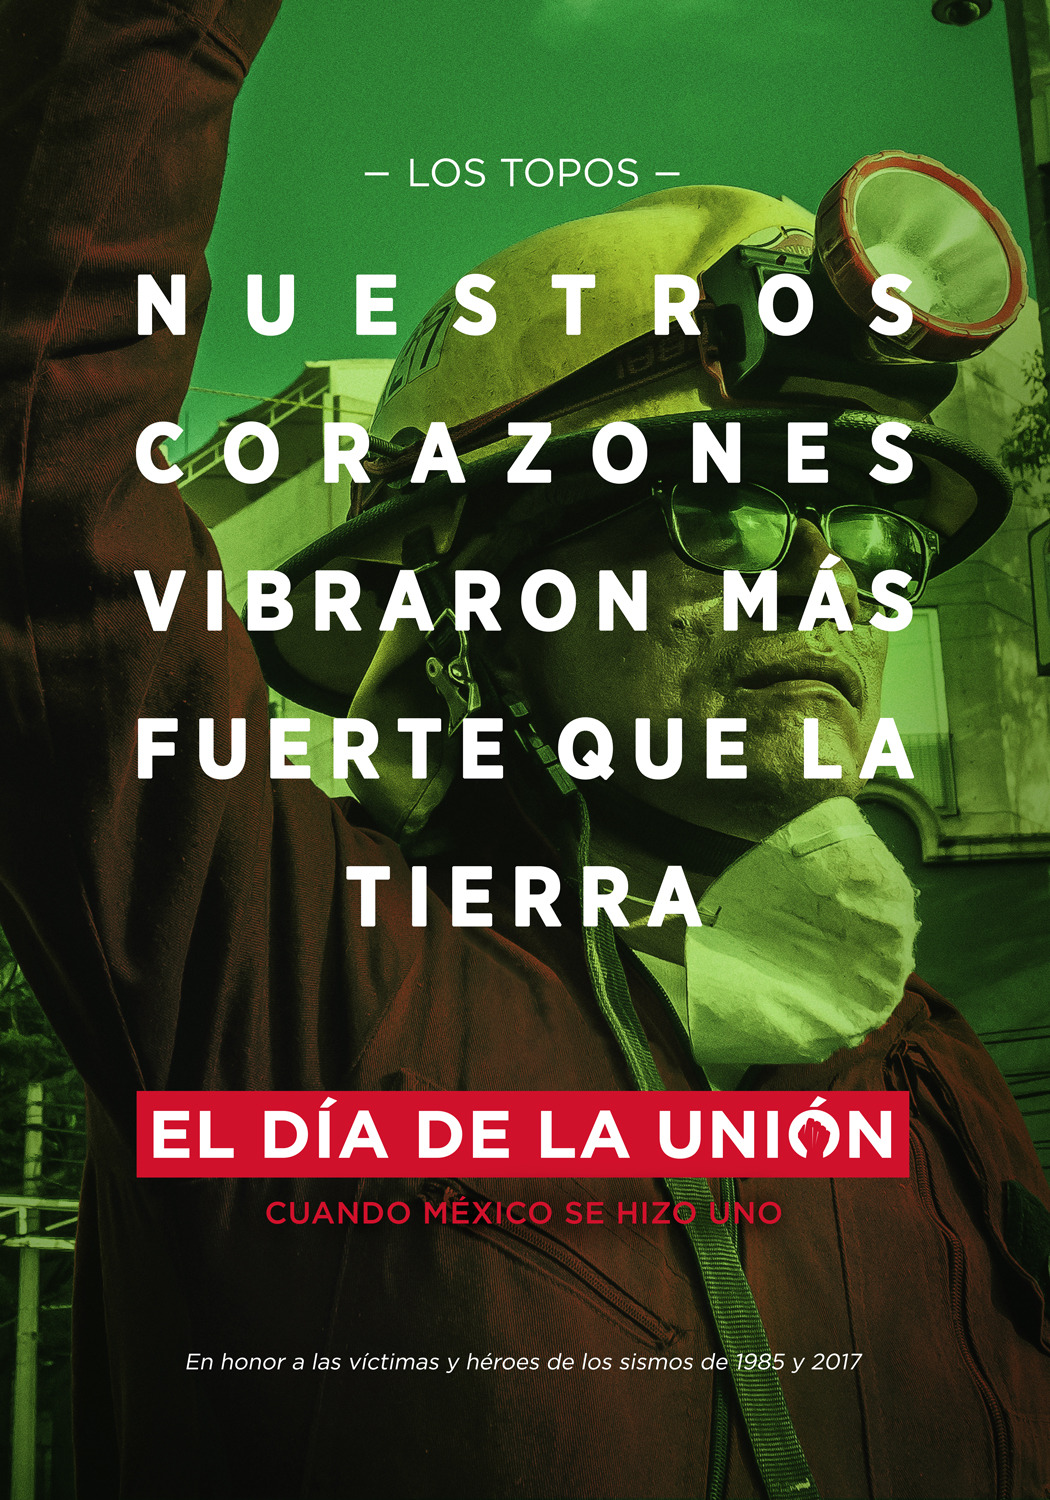 Extra Large Movie Poster Image for El Día de la Unión (#3 of 4)